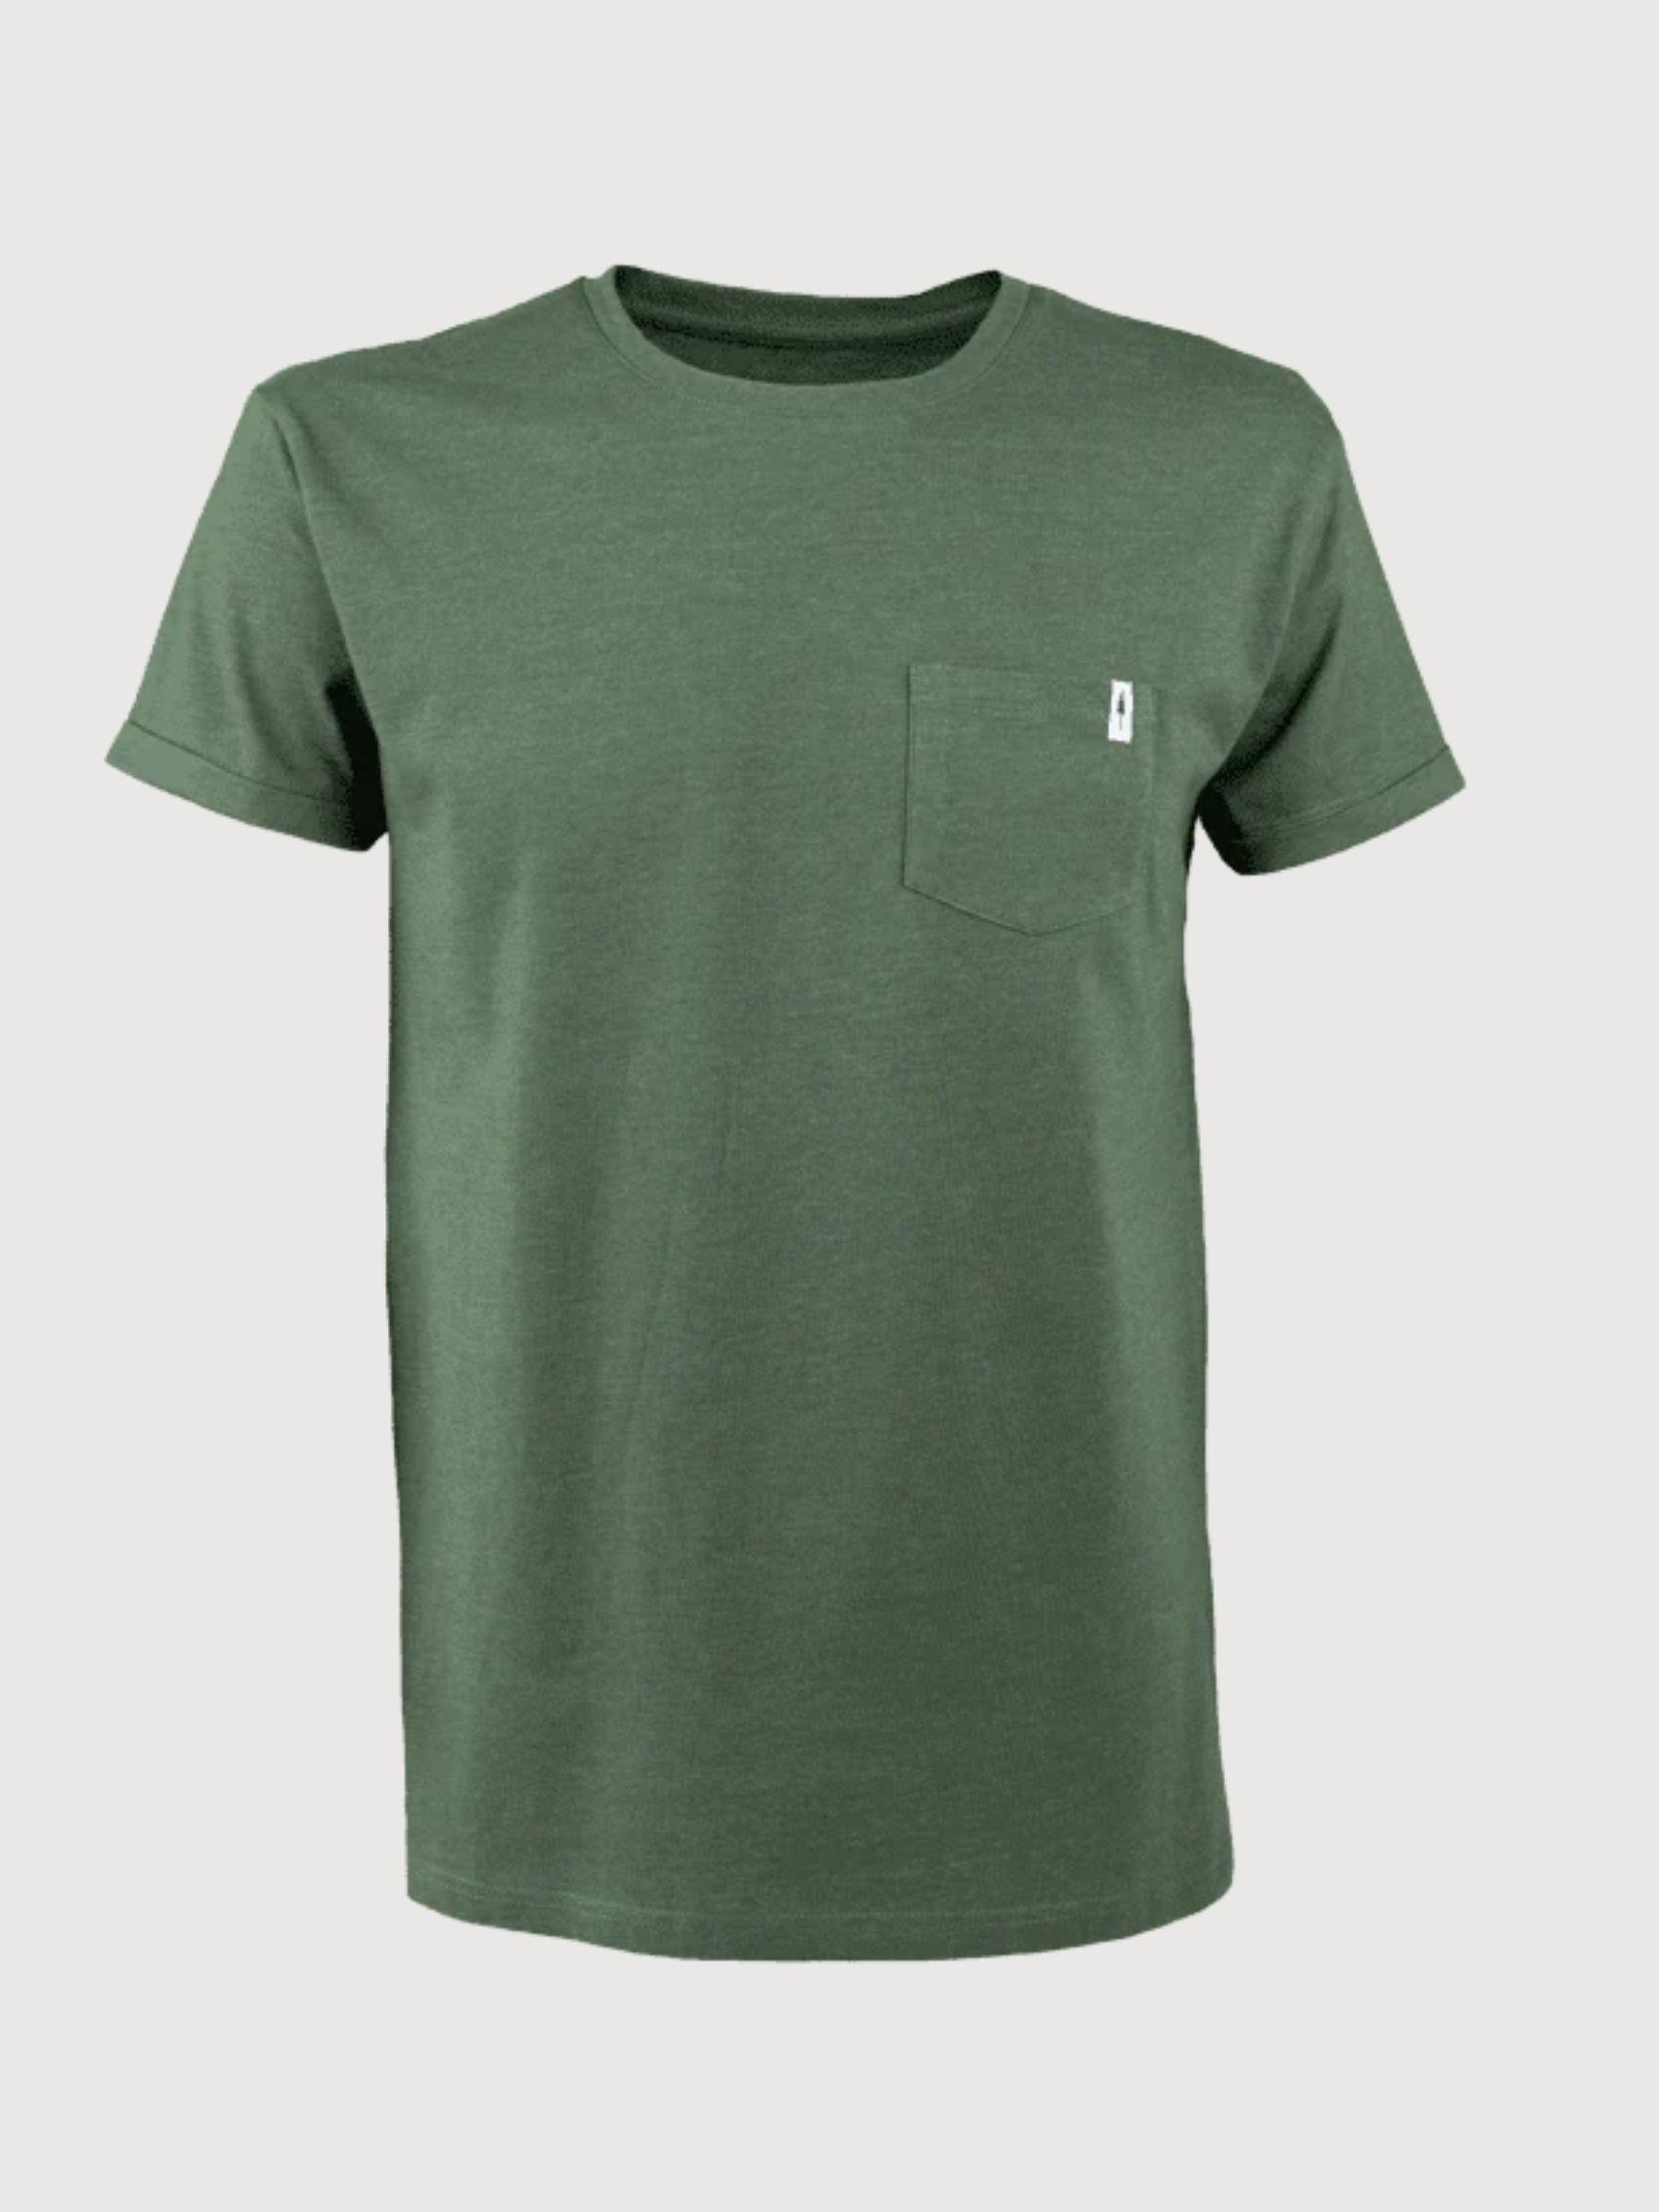 T-Shirt TreeShirt Pocket Unisex Olive melange Organic cotton | Nikin